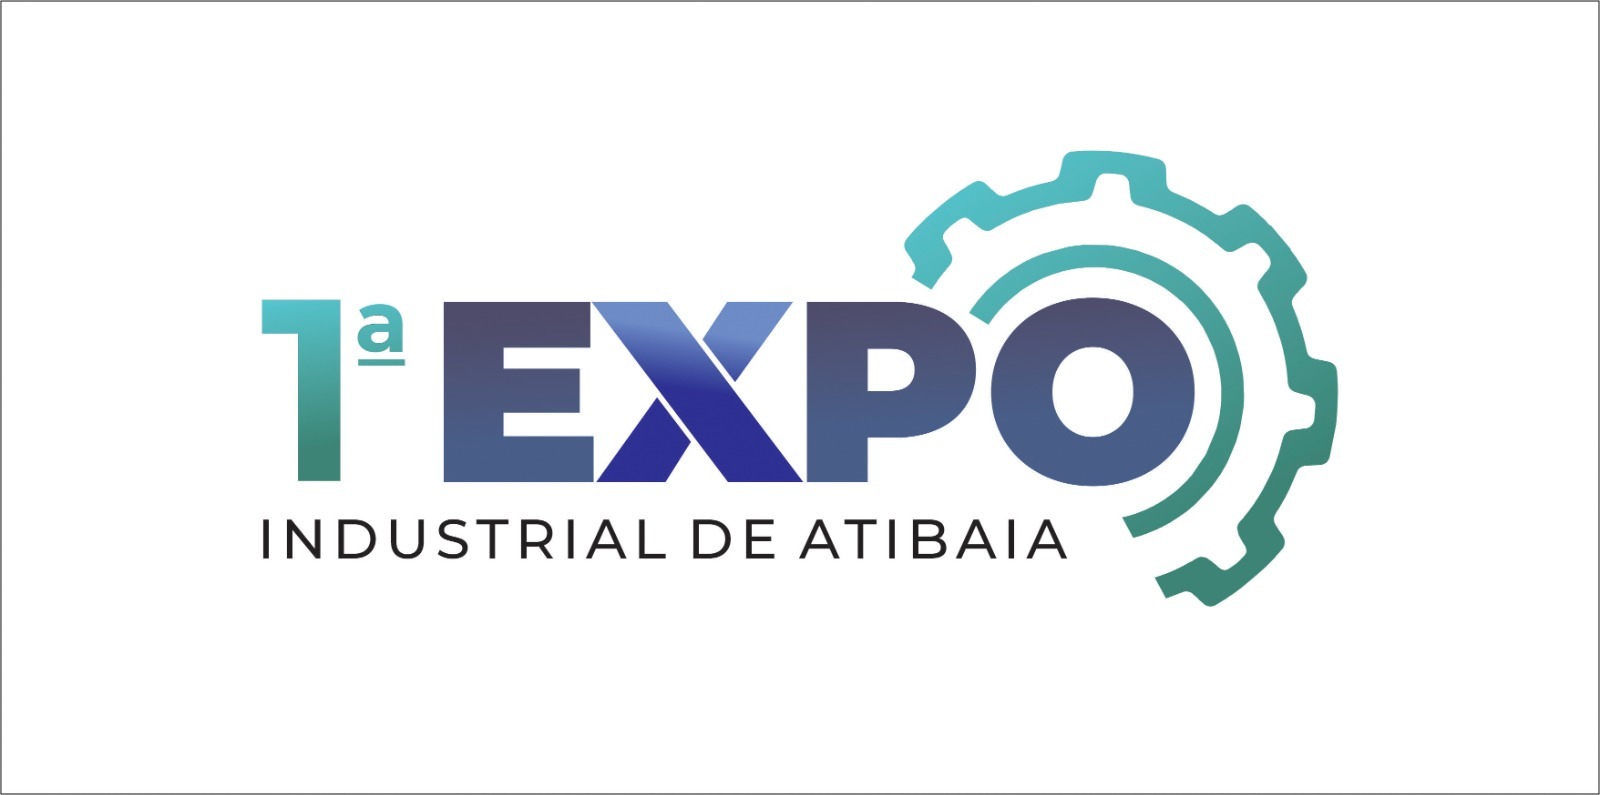 1ª Expo Industrial de Atibaia acontece nesta semana; faça seu credenciamento